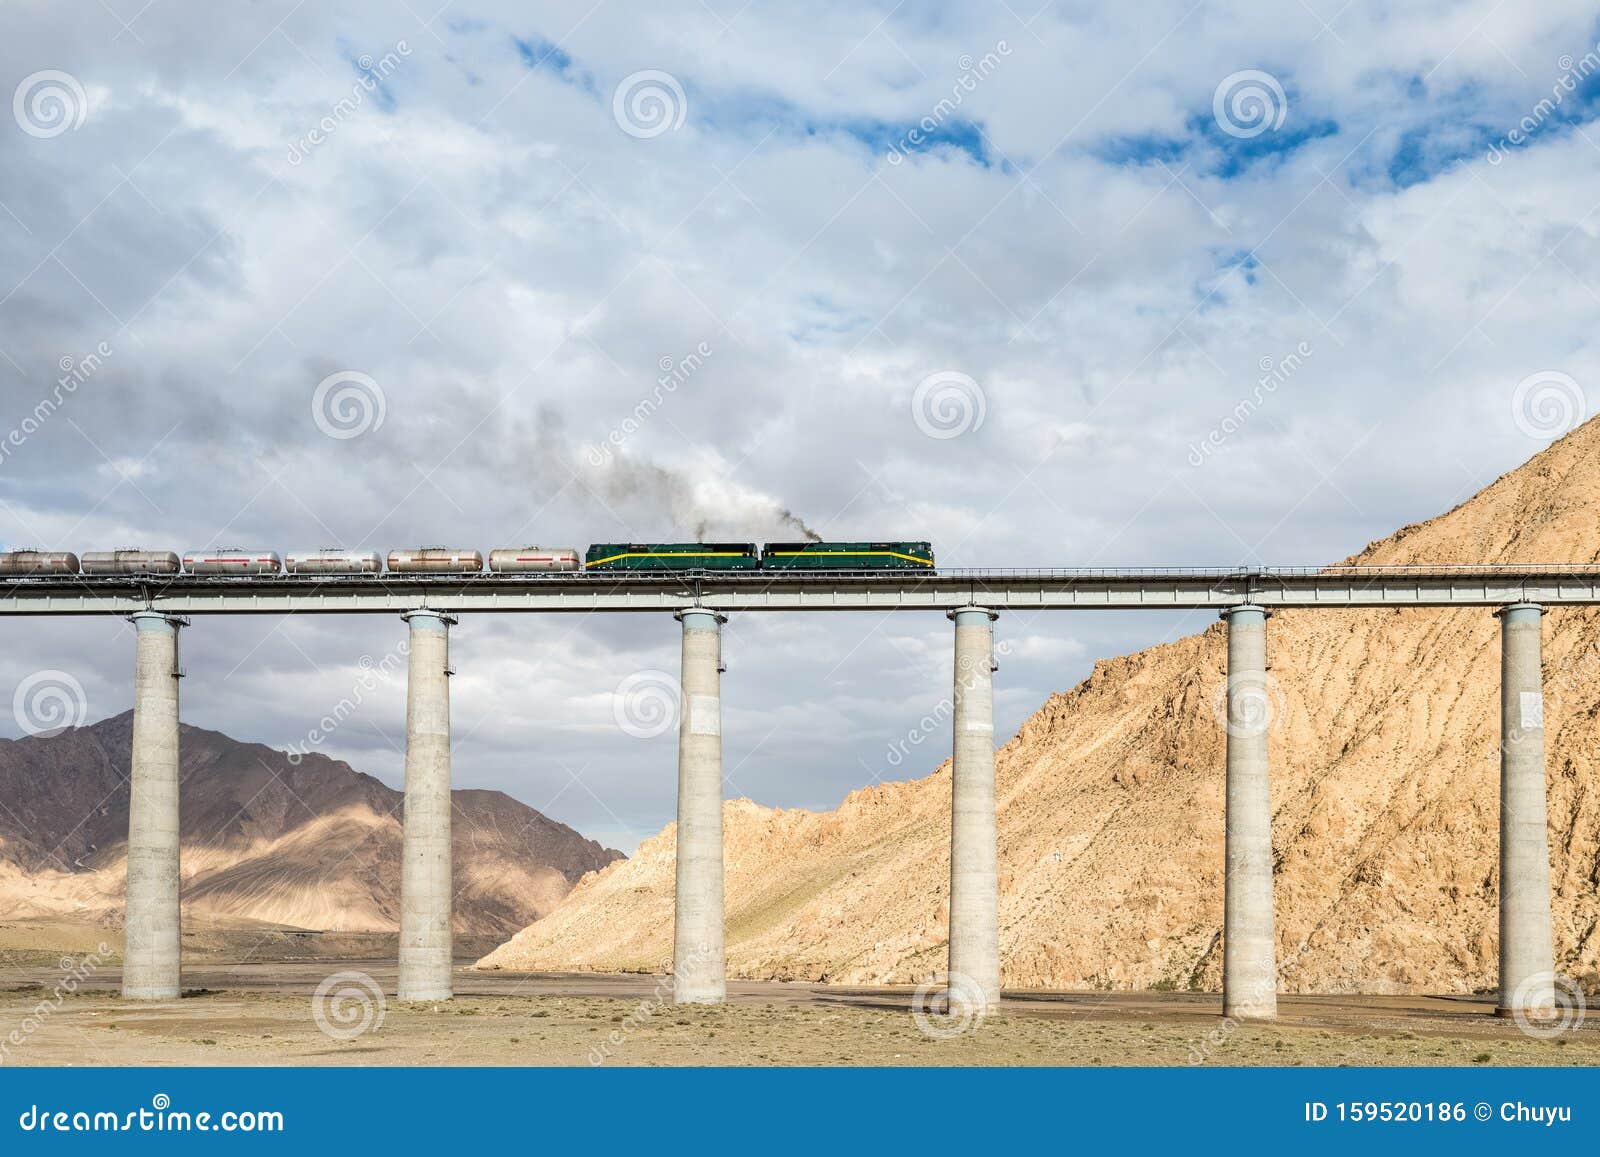 Закрытие дороги Цинхай-Тибет. Закрытие железной дороги Цинхай-Тибет, поезд на железнодорожном мосту, Китай